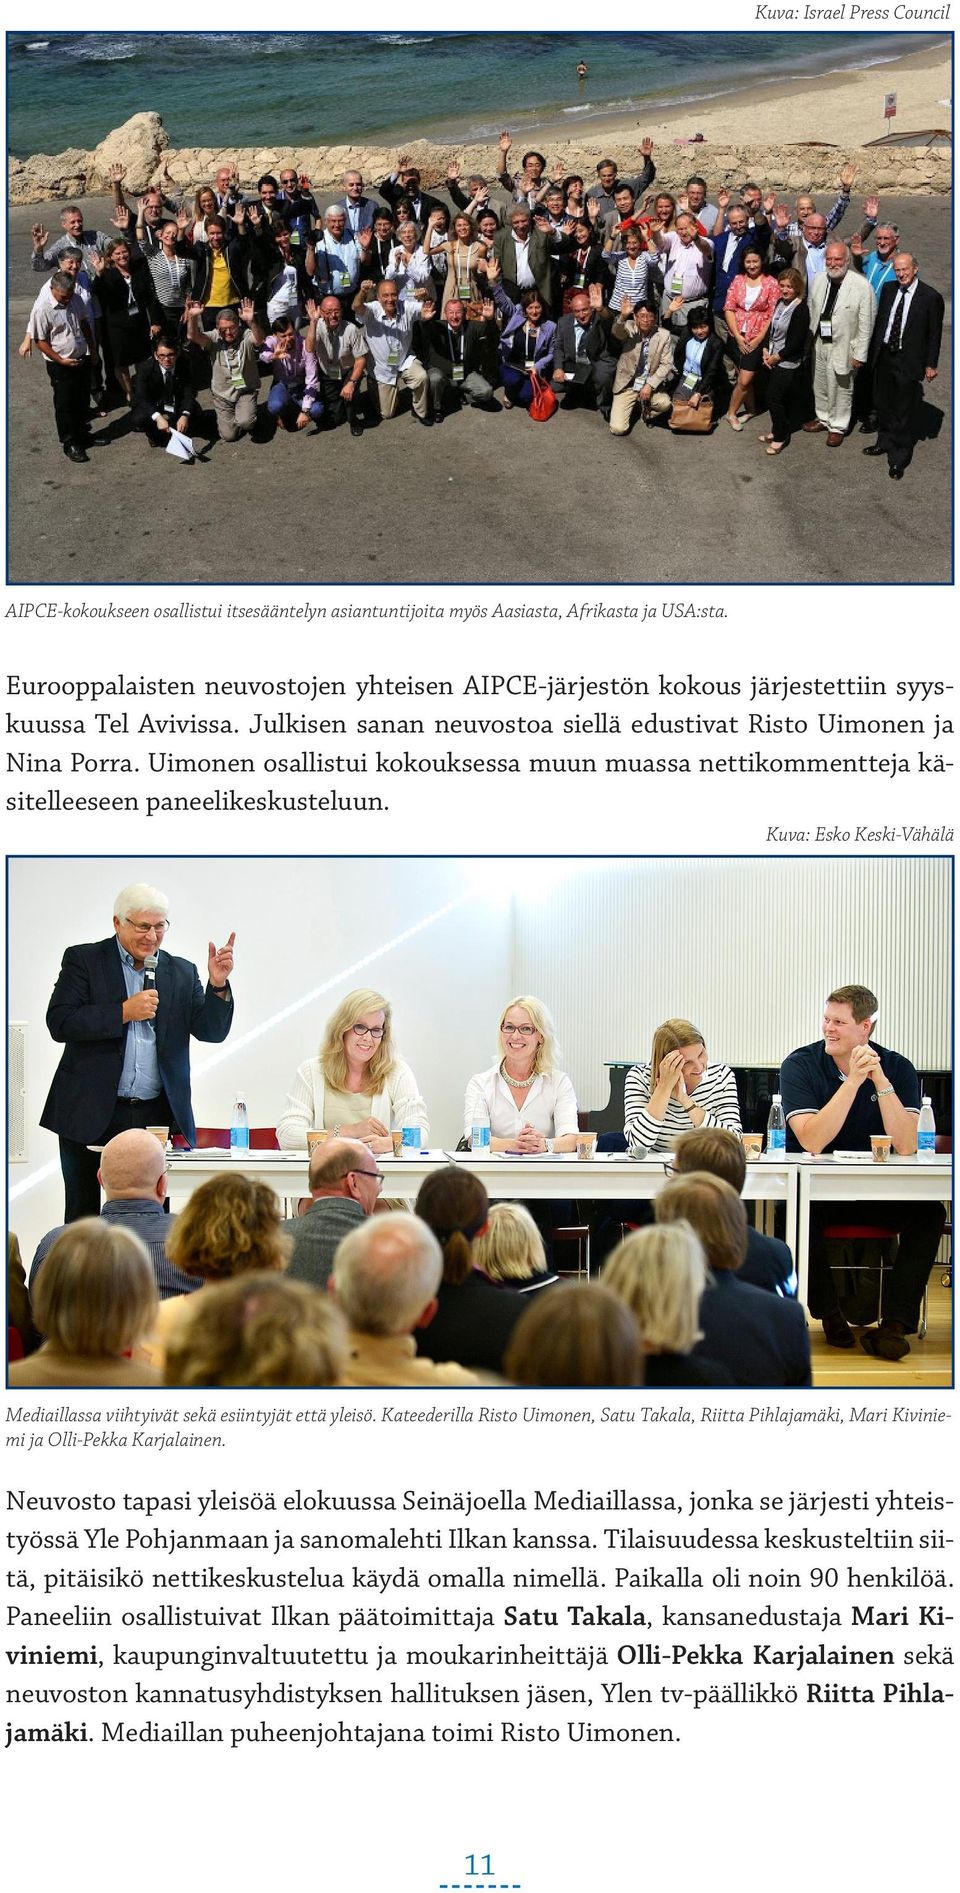 Uimonen osallistui kokouksessa muun muassa nettikommentteja käsitelleeseen paneelikeskusteluun. Kuva: Esko Keski-Vähälä Mediaillassa viihtyivät sekä esiintyjät että yleisö.